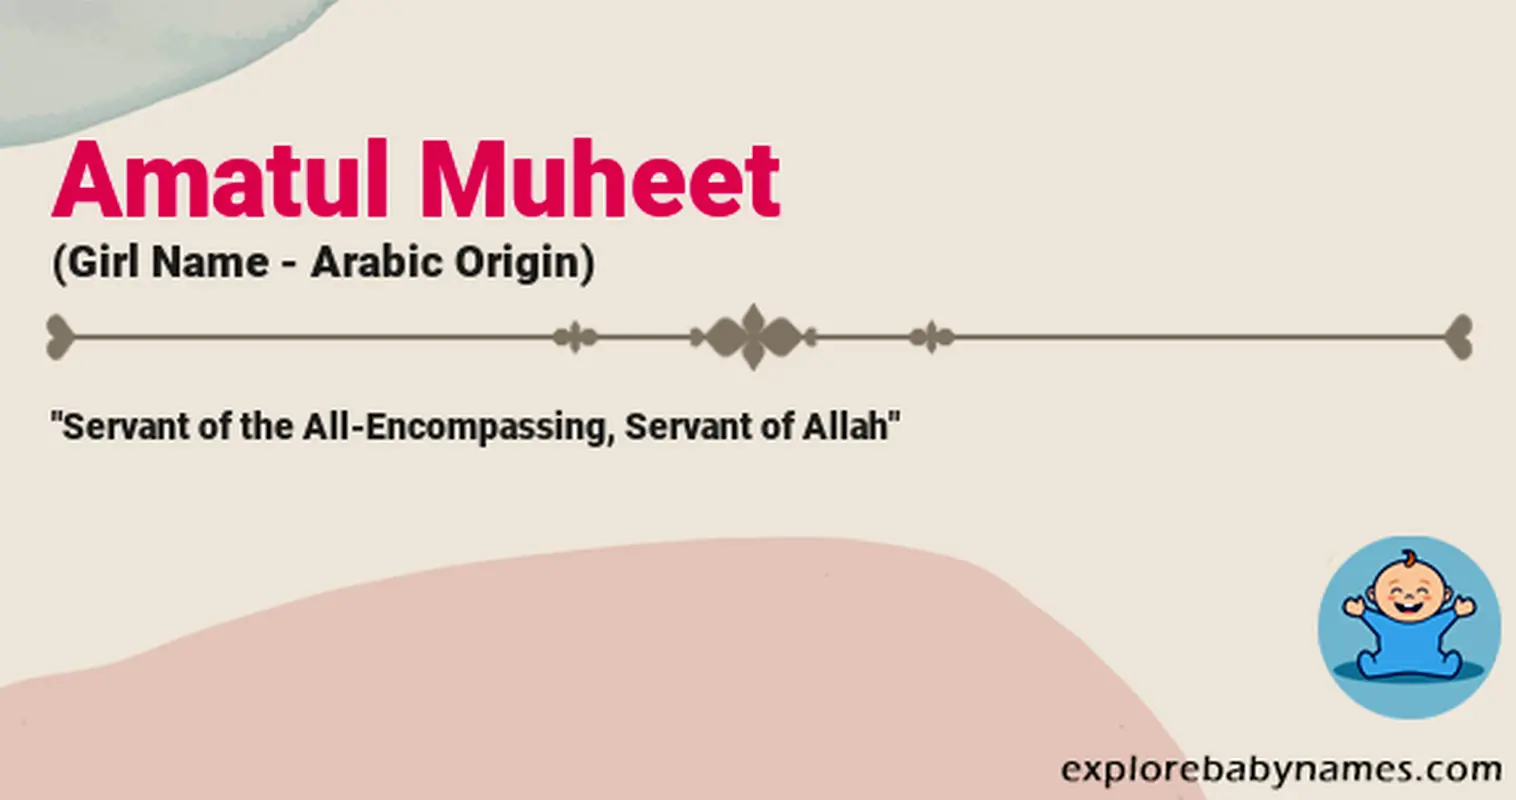 Meaning of Amatul Muheet